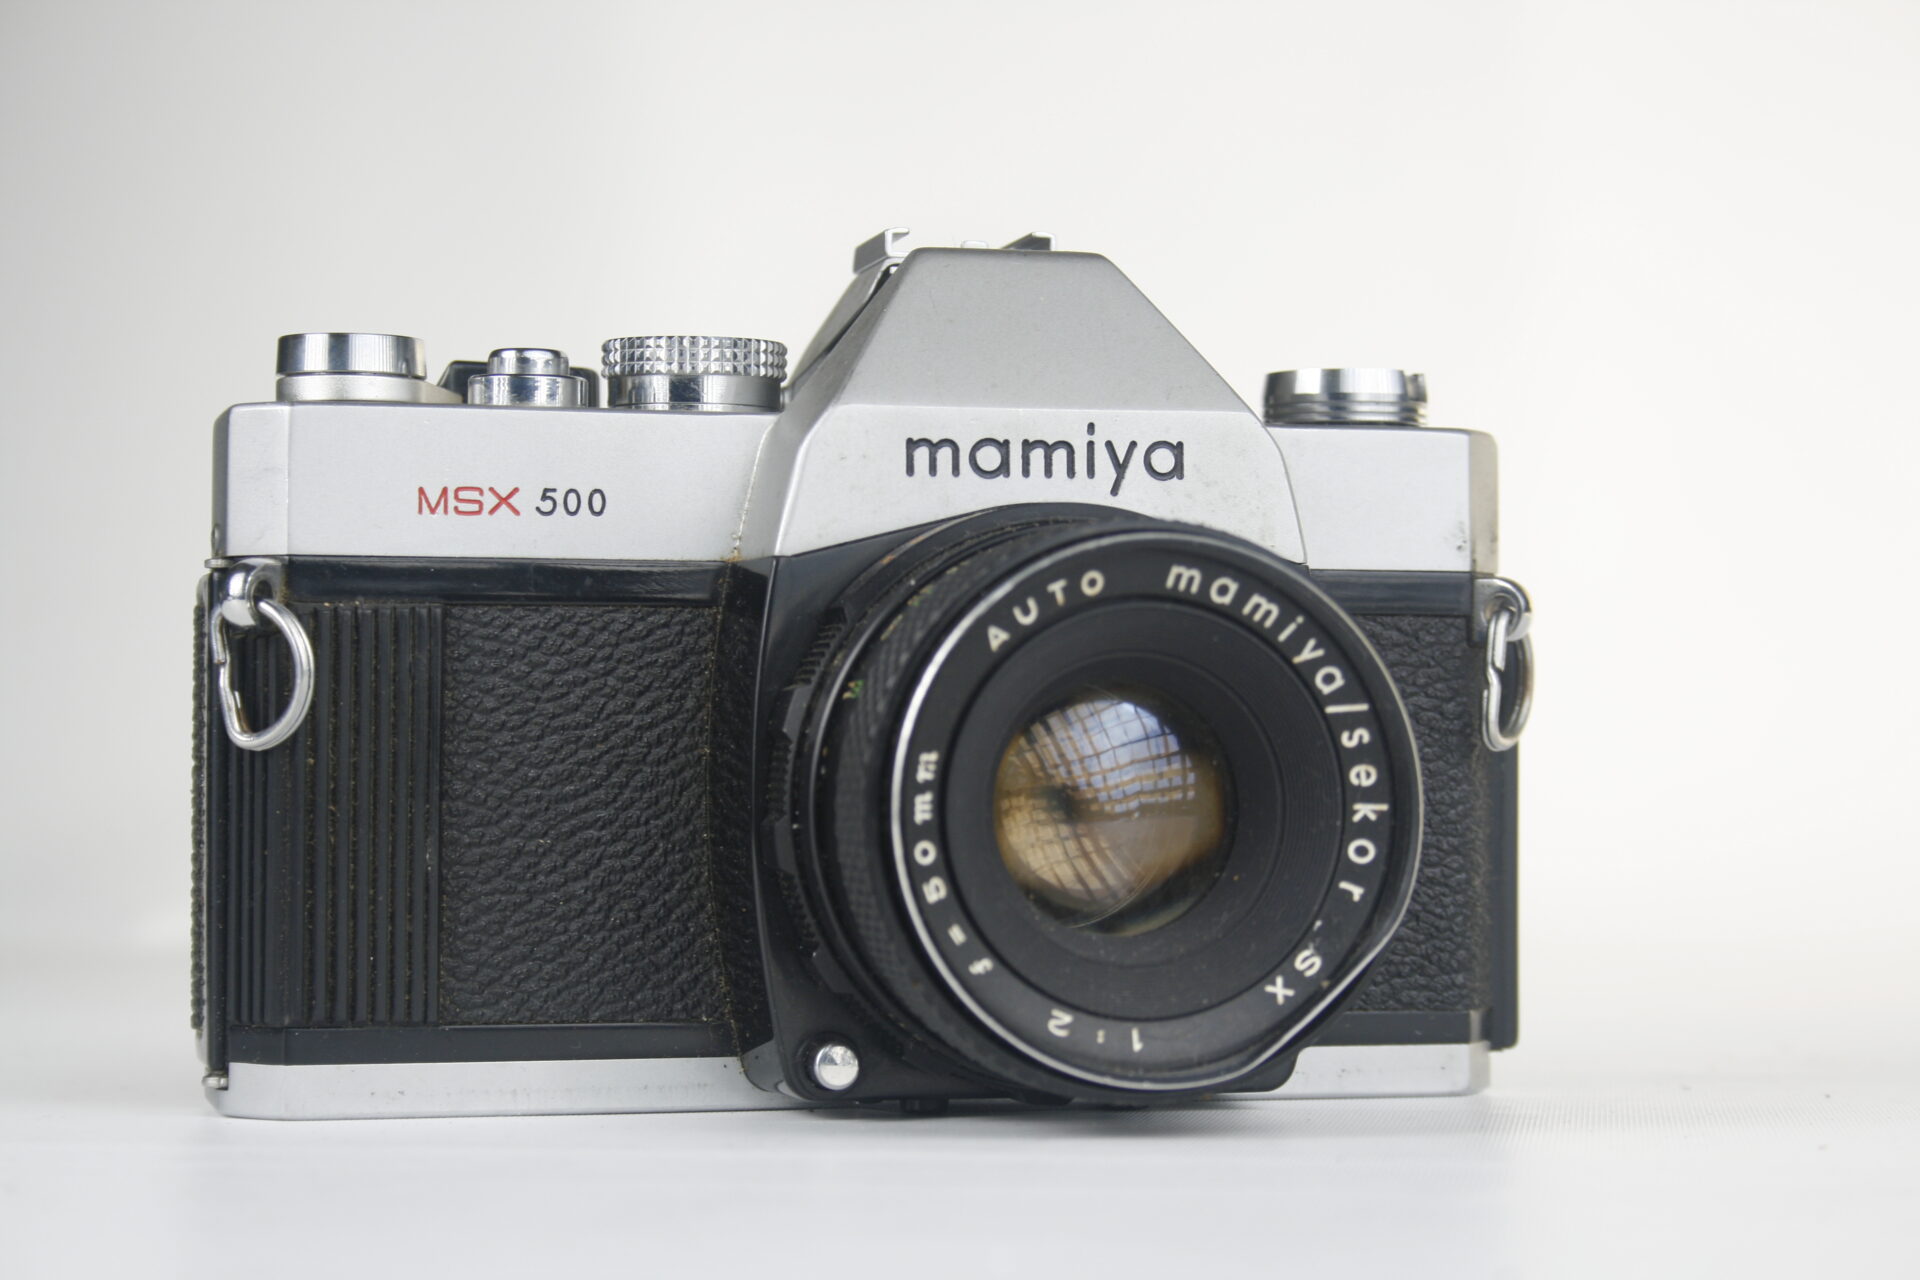 Mamiya MSX 500. 35mm SLR camera. 1974. Japan.